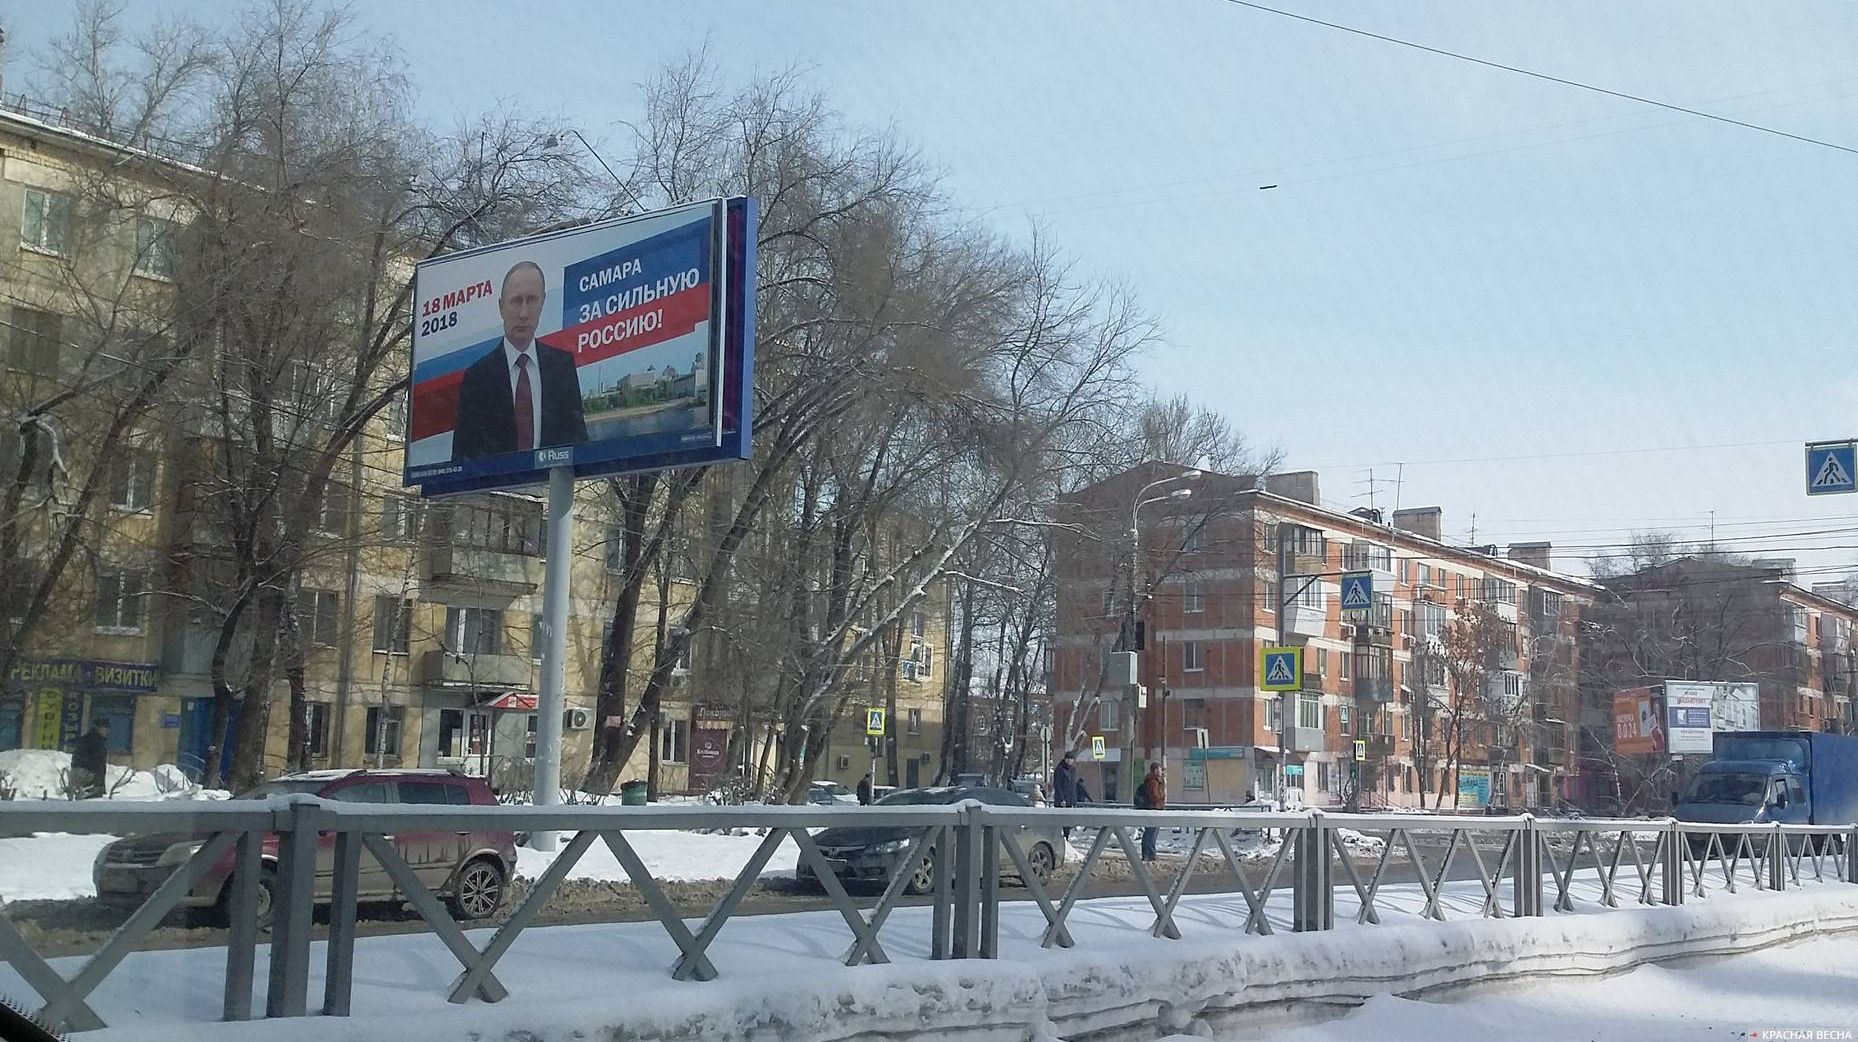 Выборы президента. Плакат с В. В. Путиным.